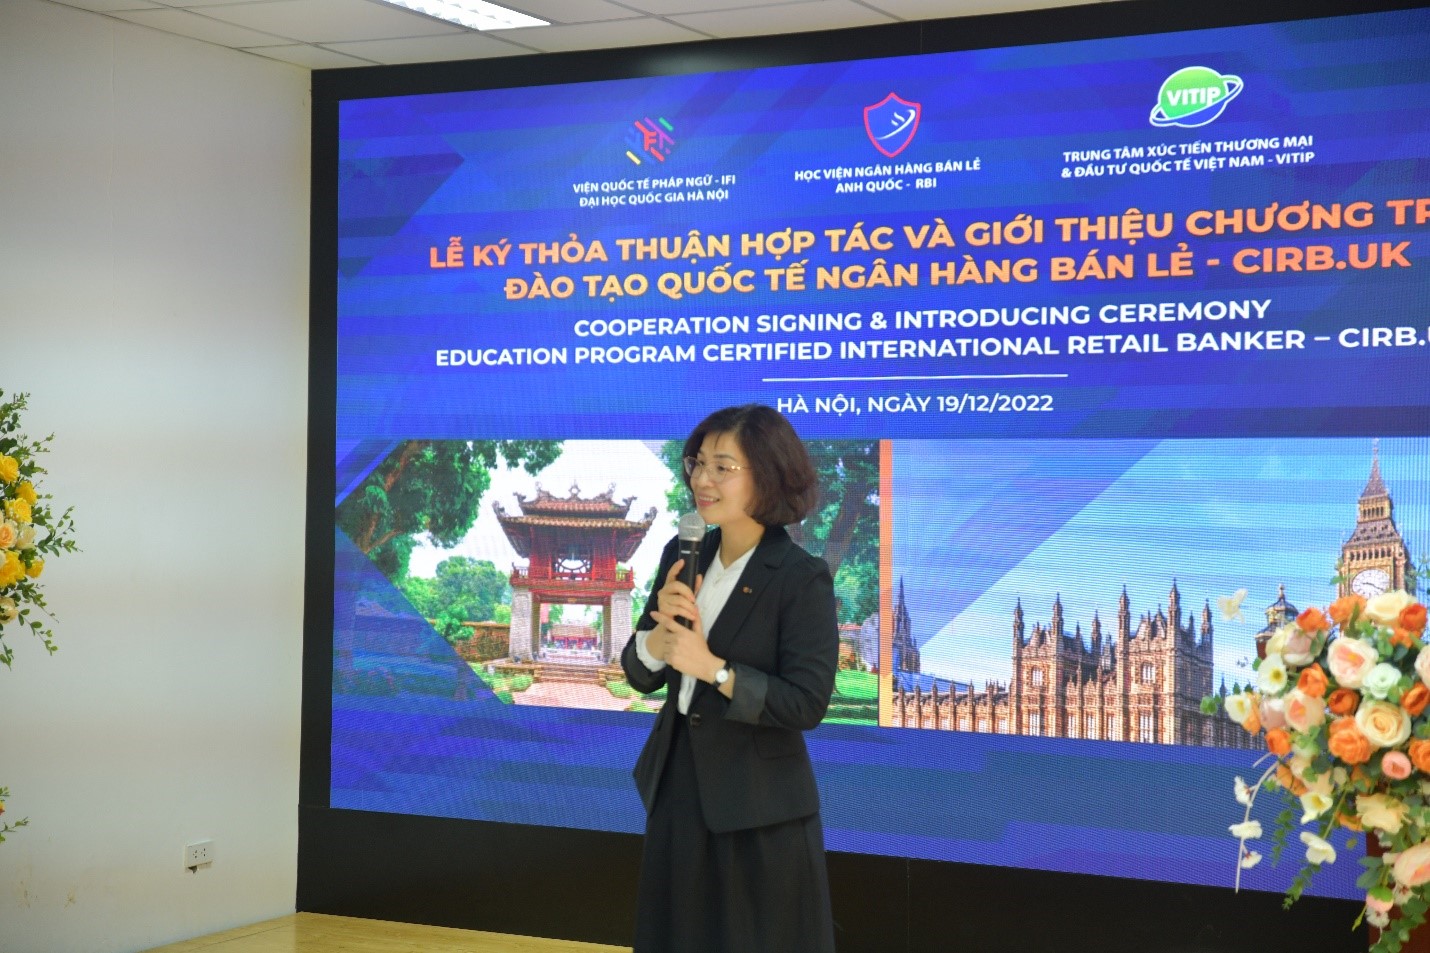 Bà Đỗ Thị Quỳnh, Phó Giám đốc Khối Tổ chức Nhân sự MB Bank